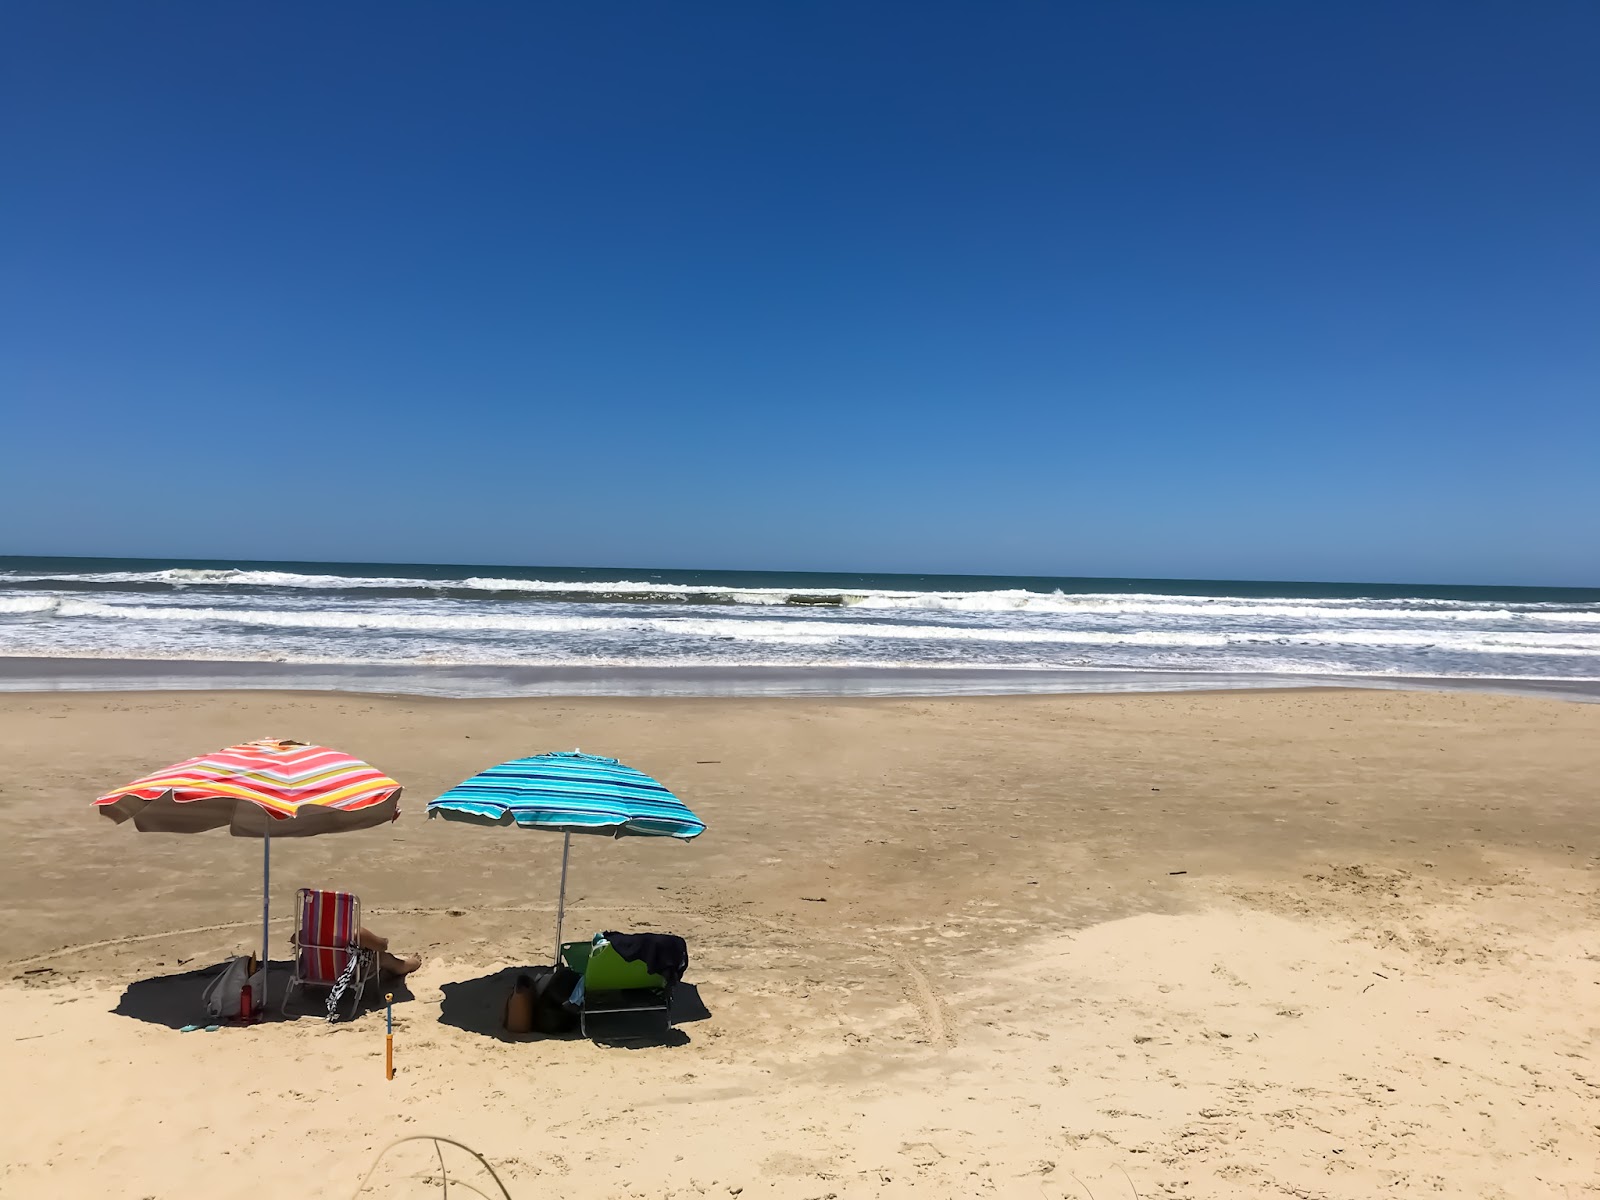 Praia de Tramandai'in fotoğrafı çok temiz temizlik seviyesi ile